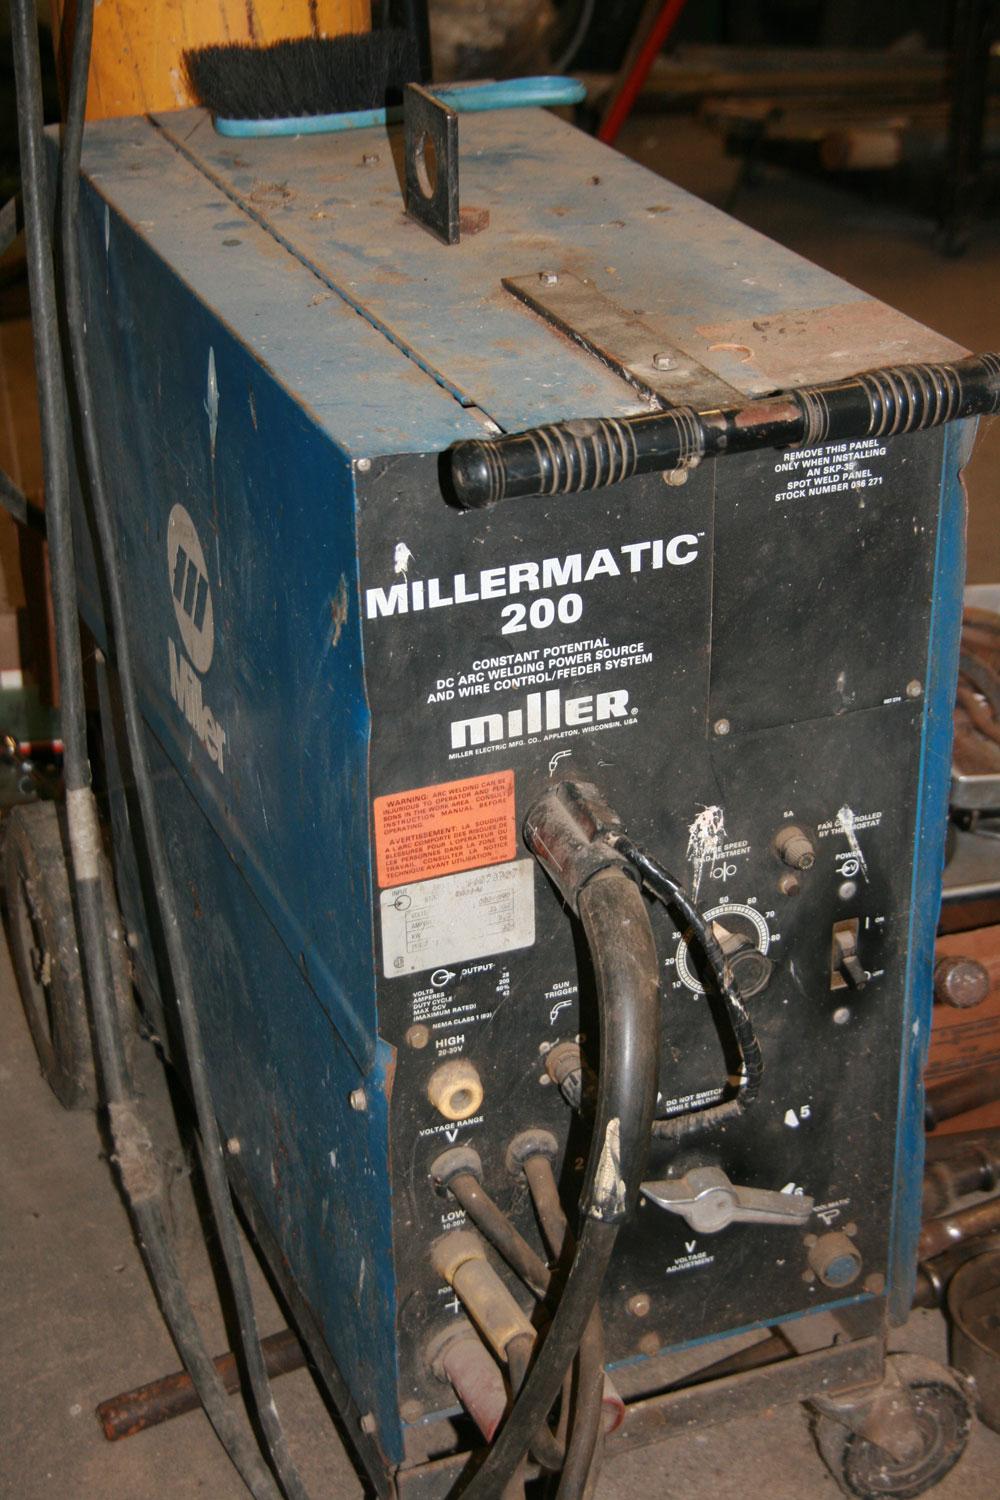 Millermatic #200 Wire Feed Welder